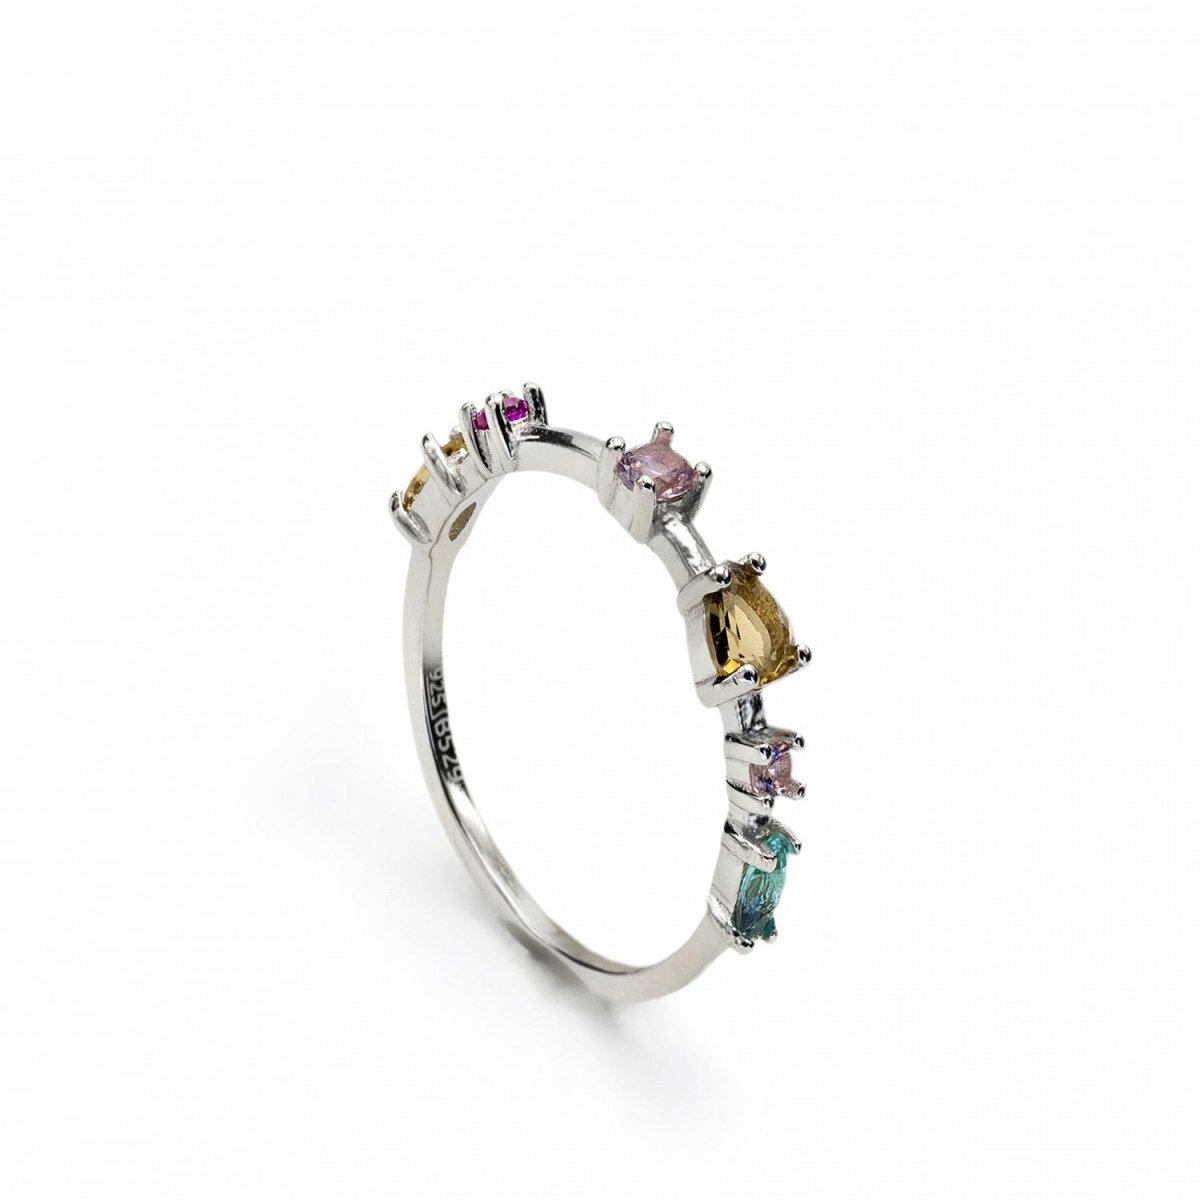 Ring - Thin rings with multi-colored adamantine quartz design